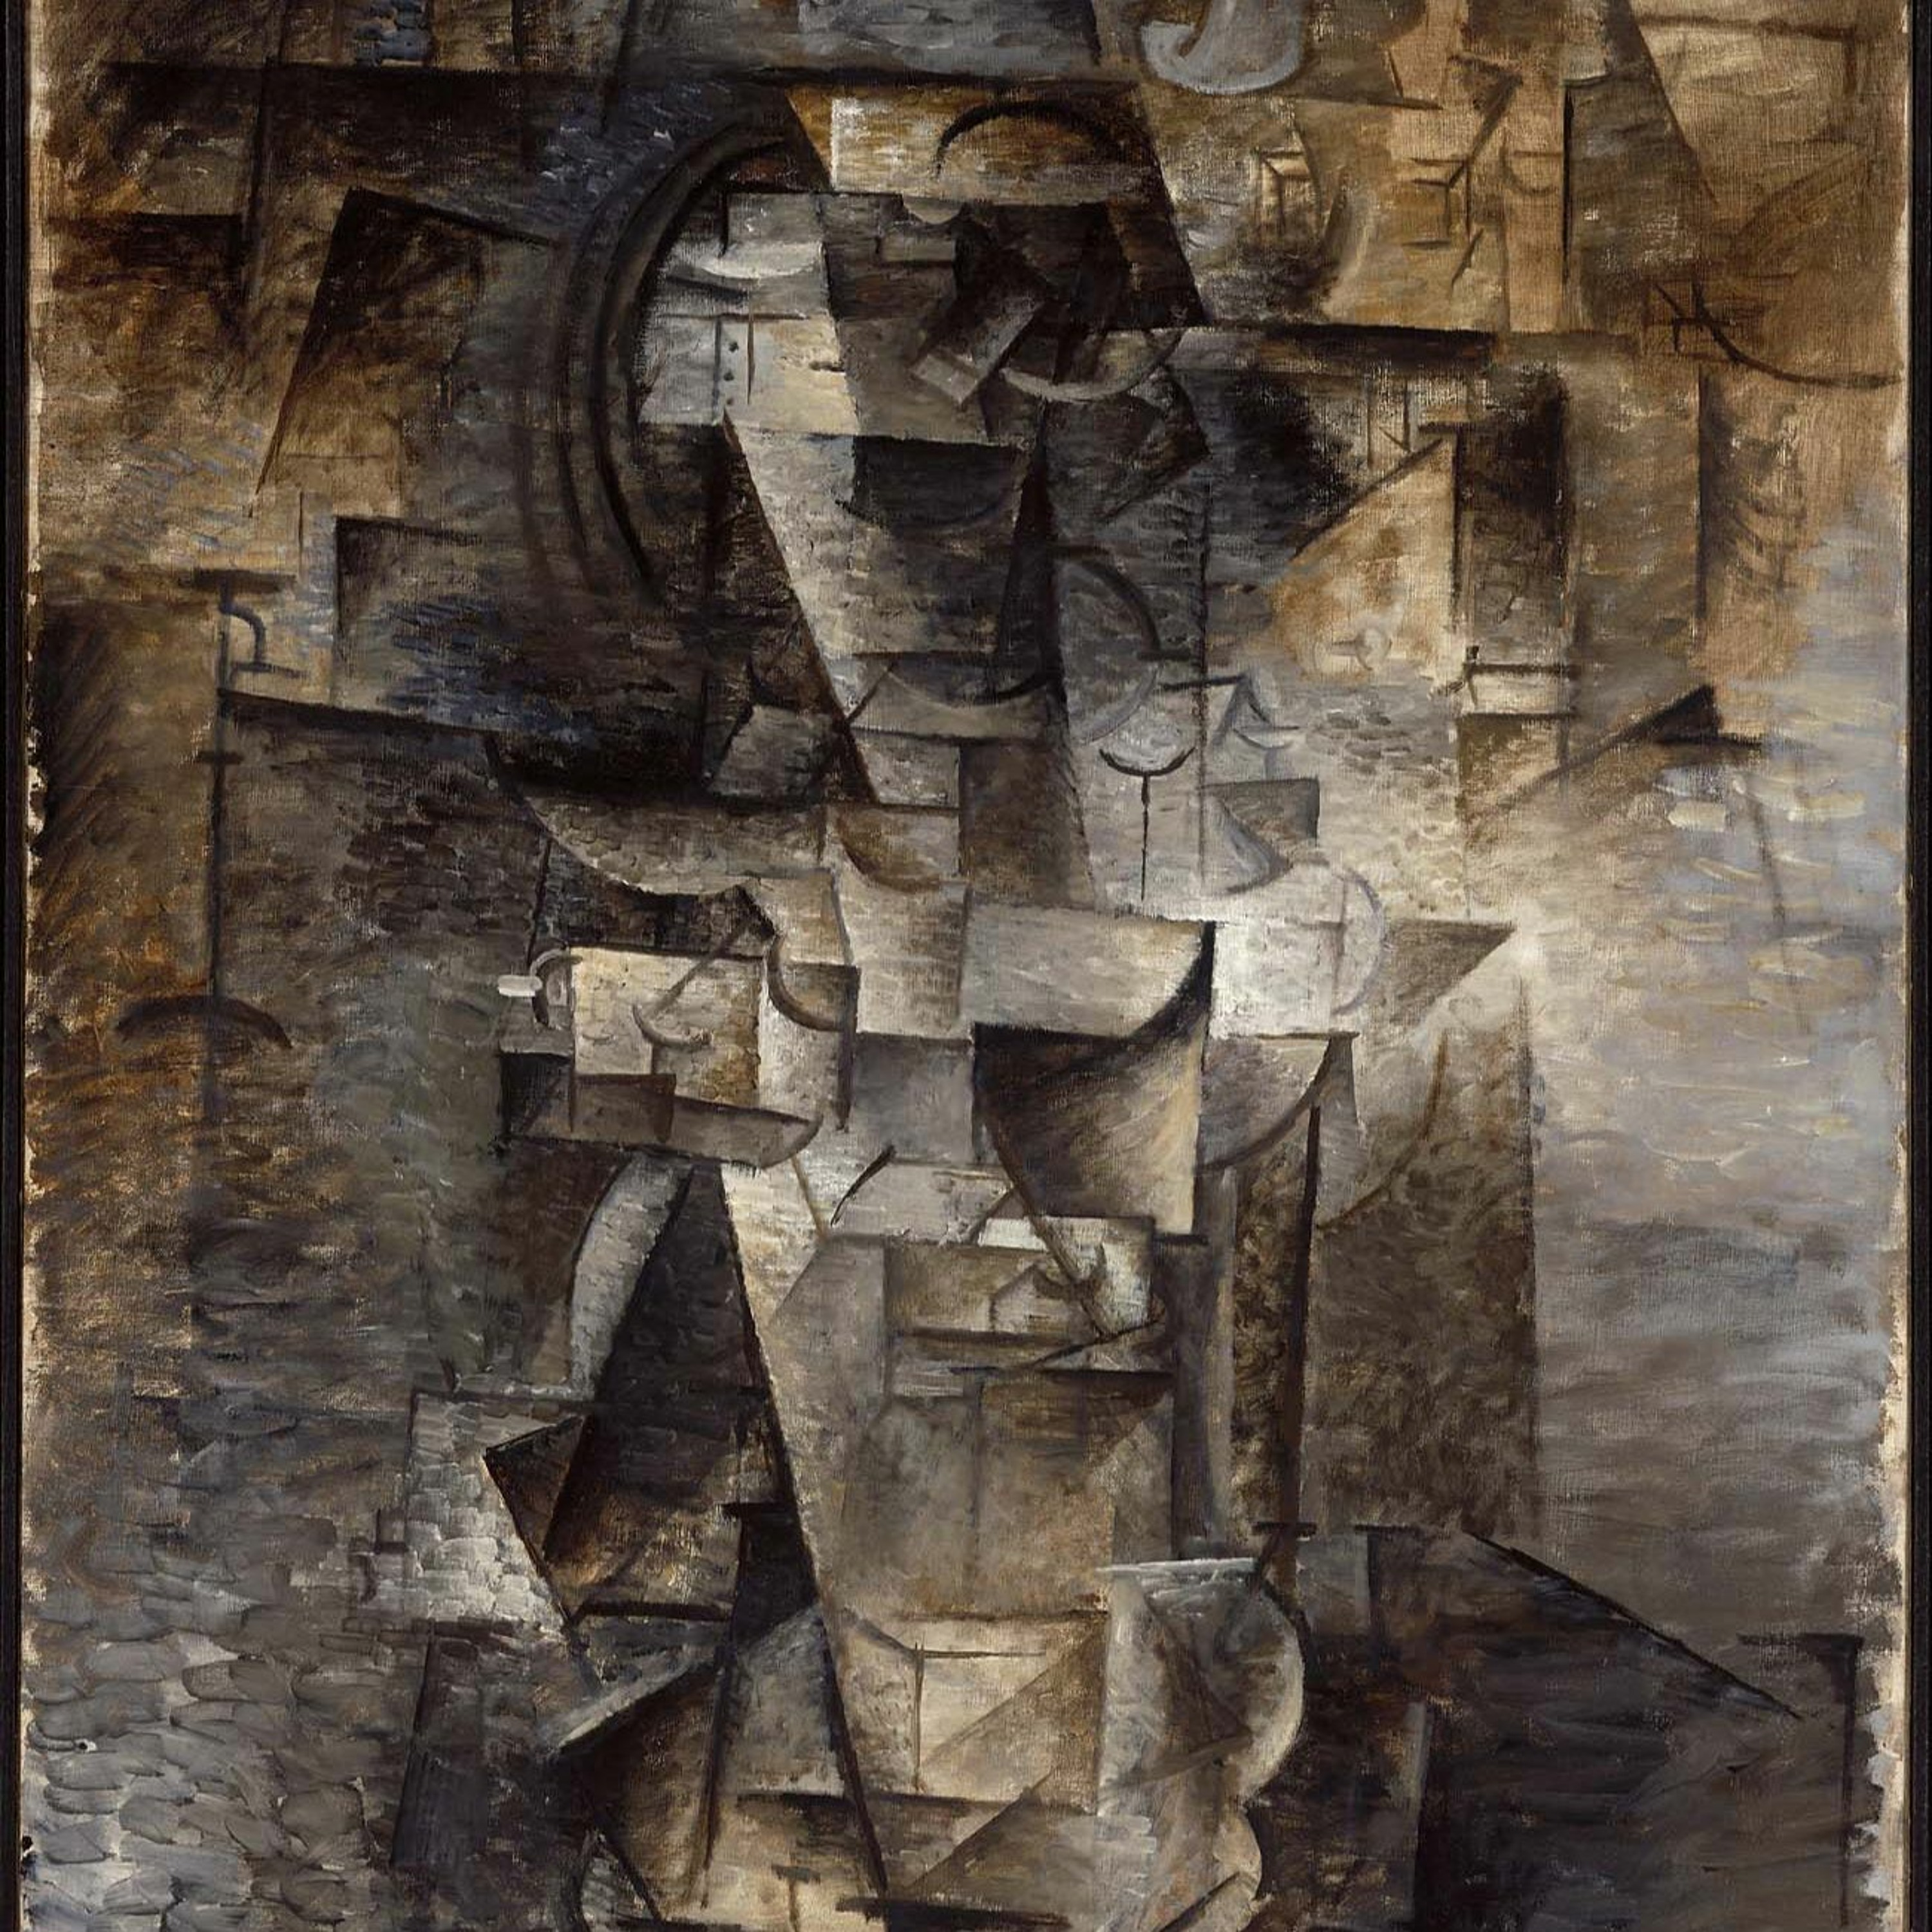 Ep. 6 - Pablo Picasso's "Portrait of a Woman" (1910)